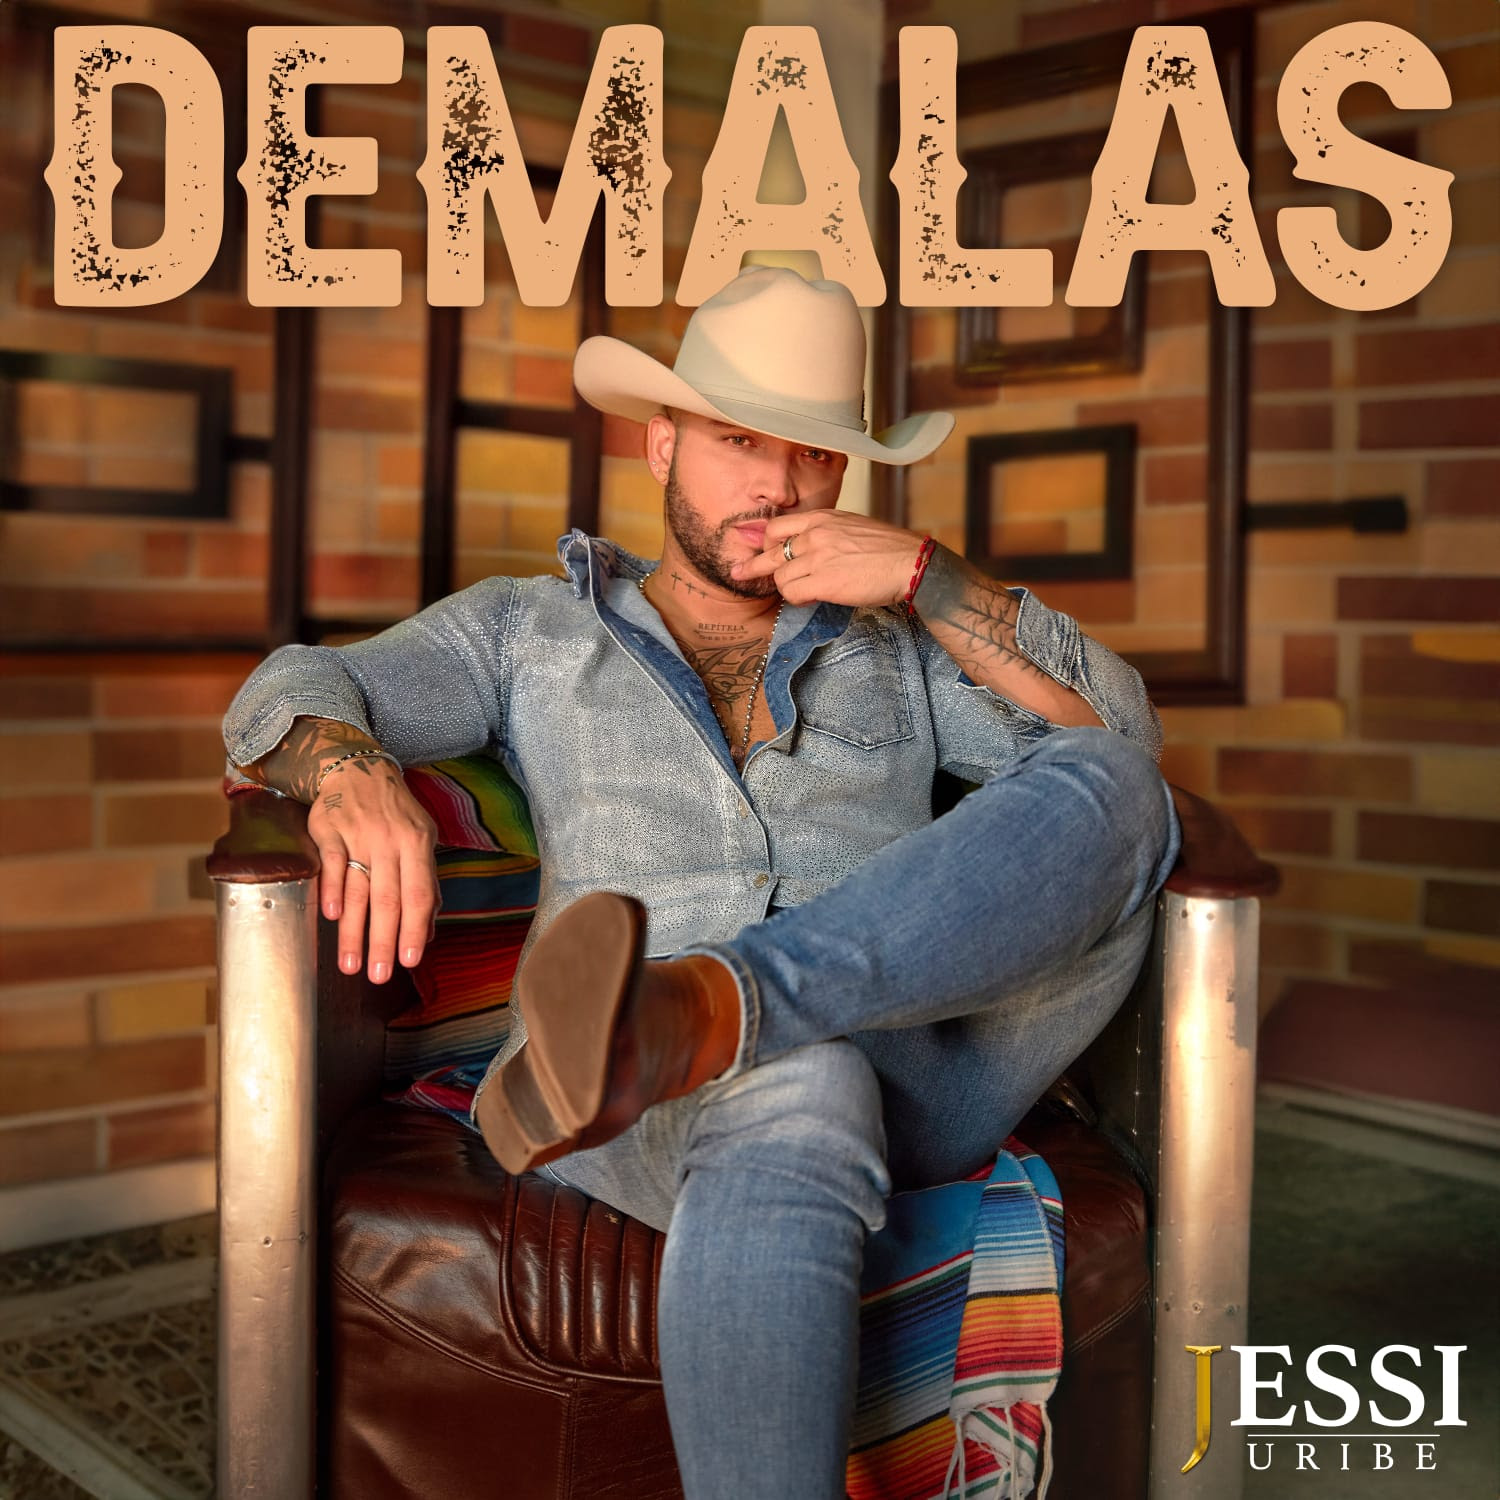 Jessi Uribe le dice adiós a los amores tóxicos con su nuevo sencillo «Demalas»